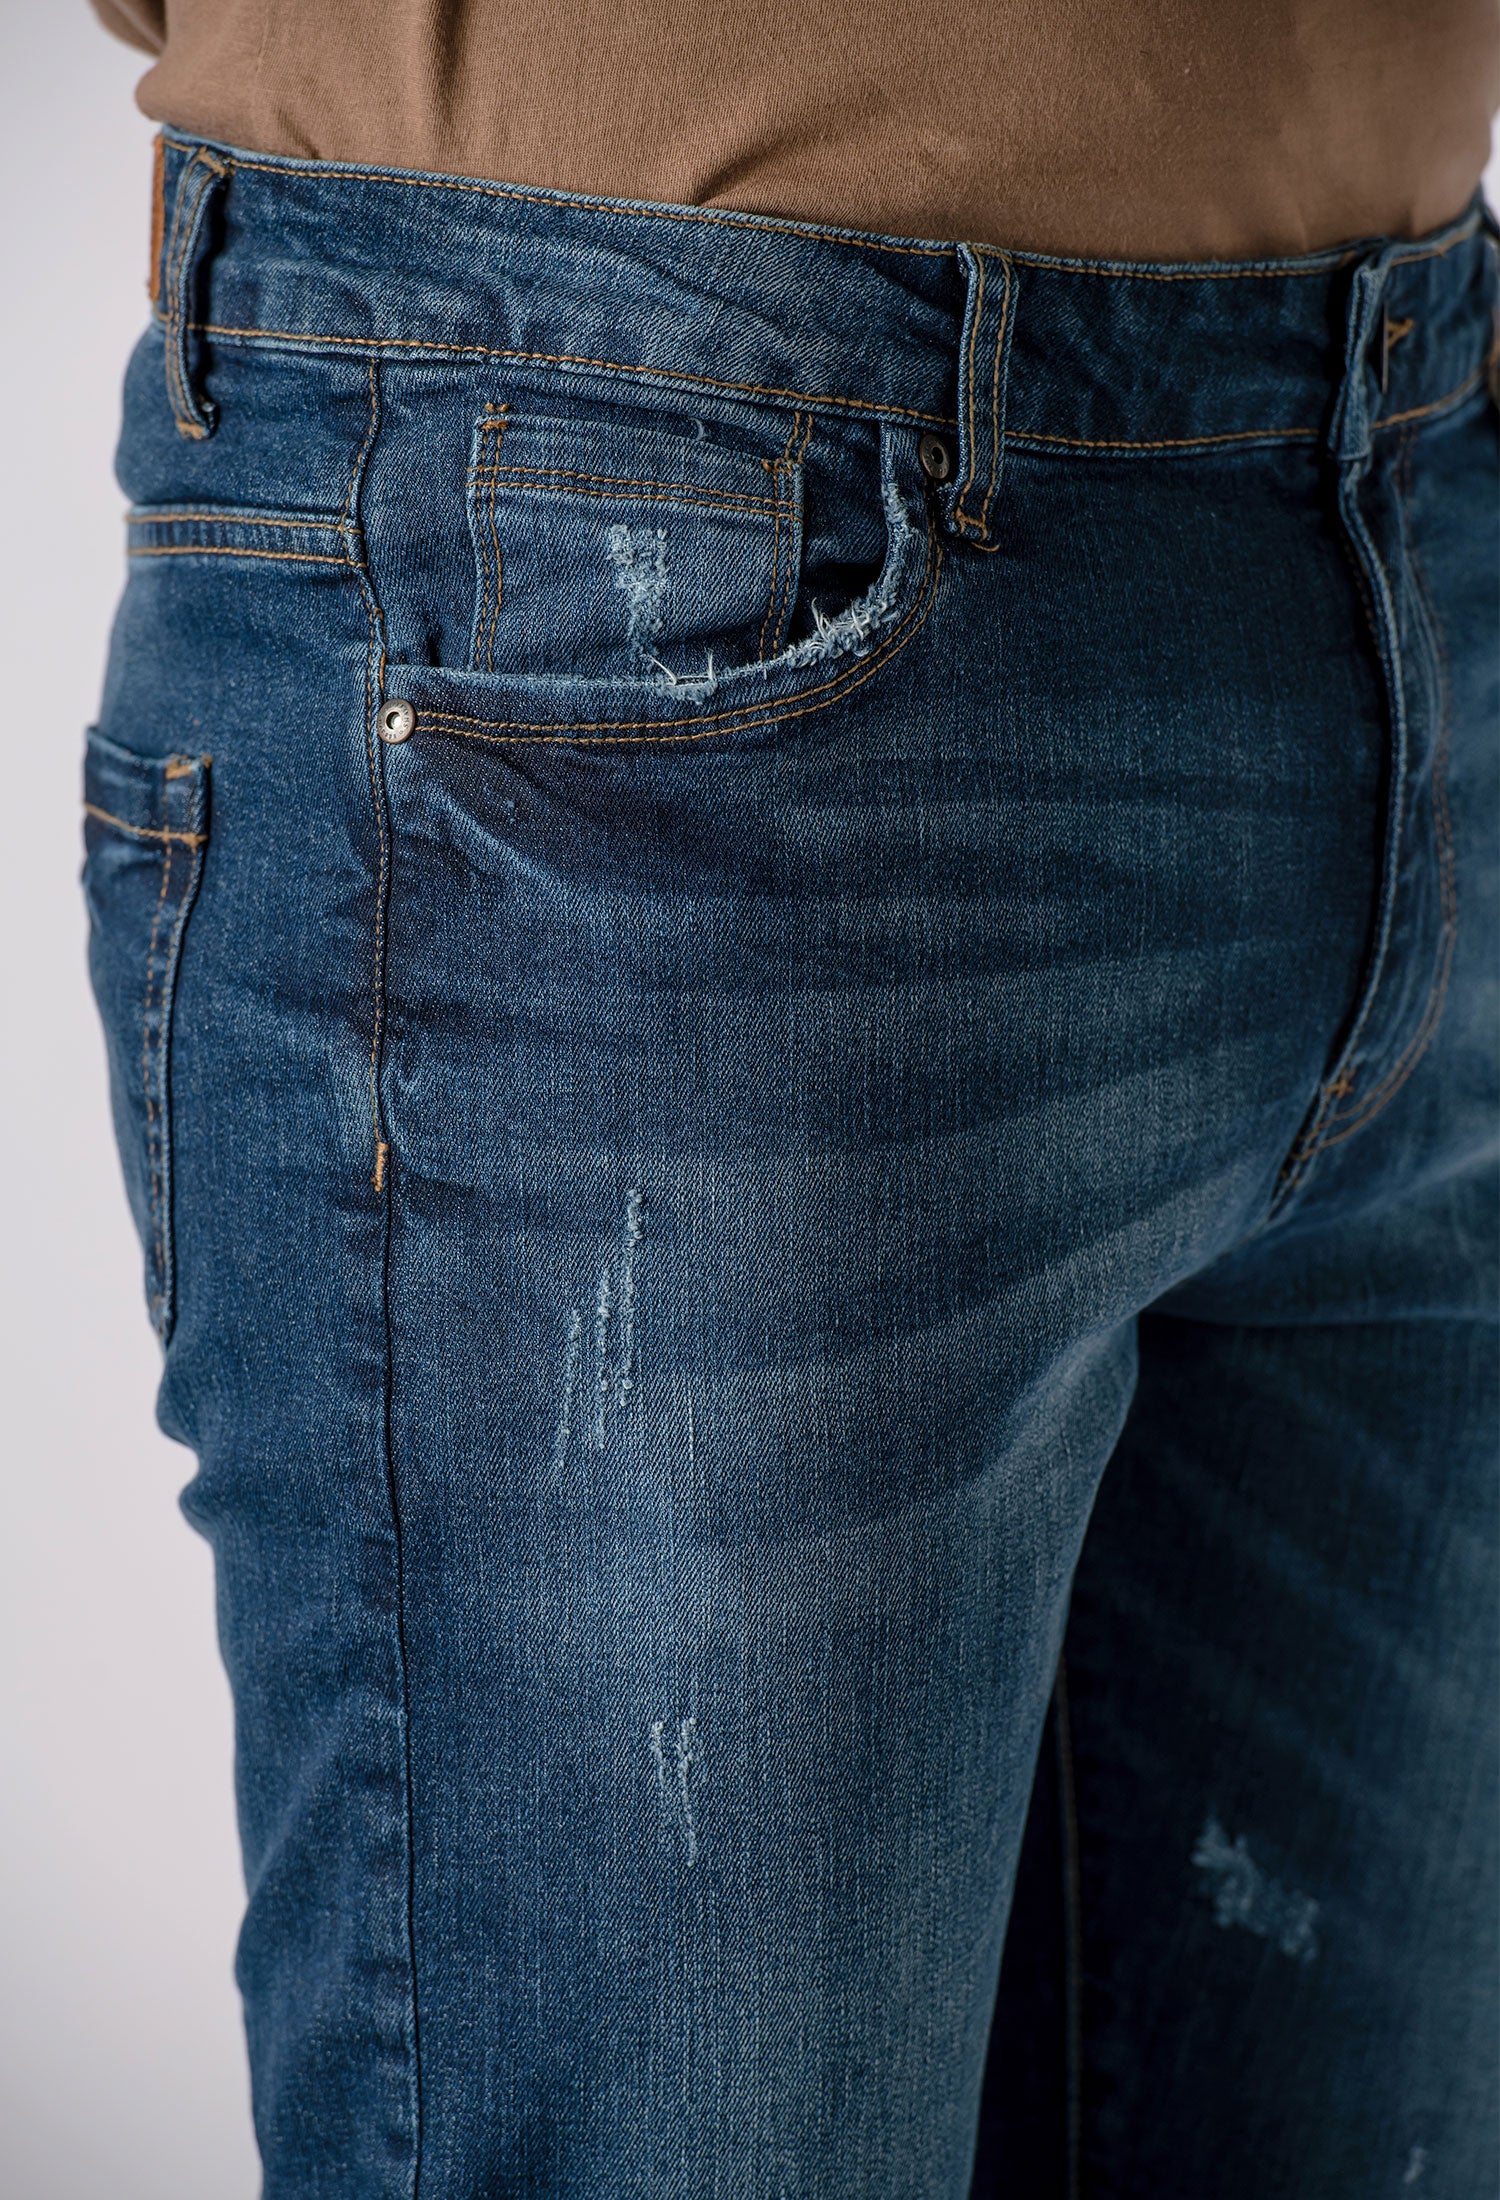 Indigo Distressed Denim Jeans (DNM-000004)